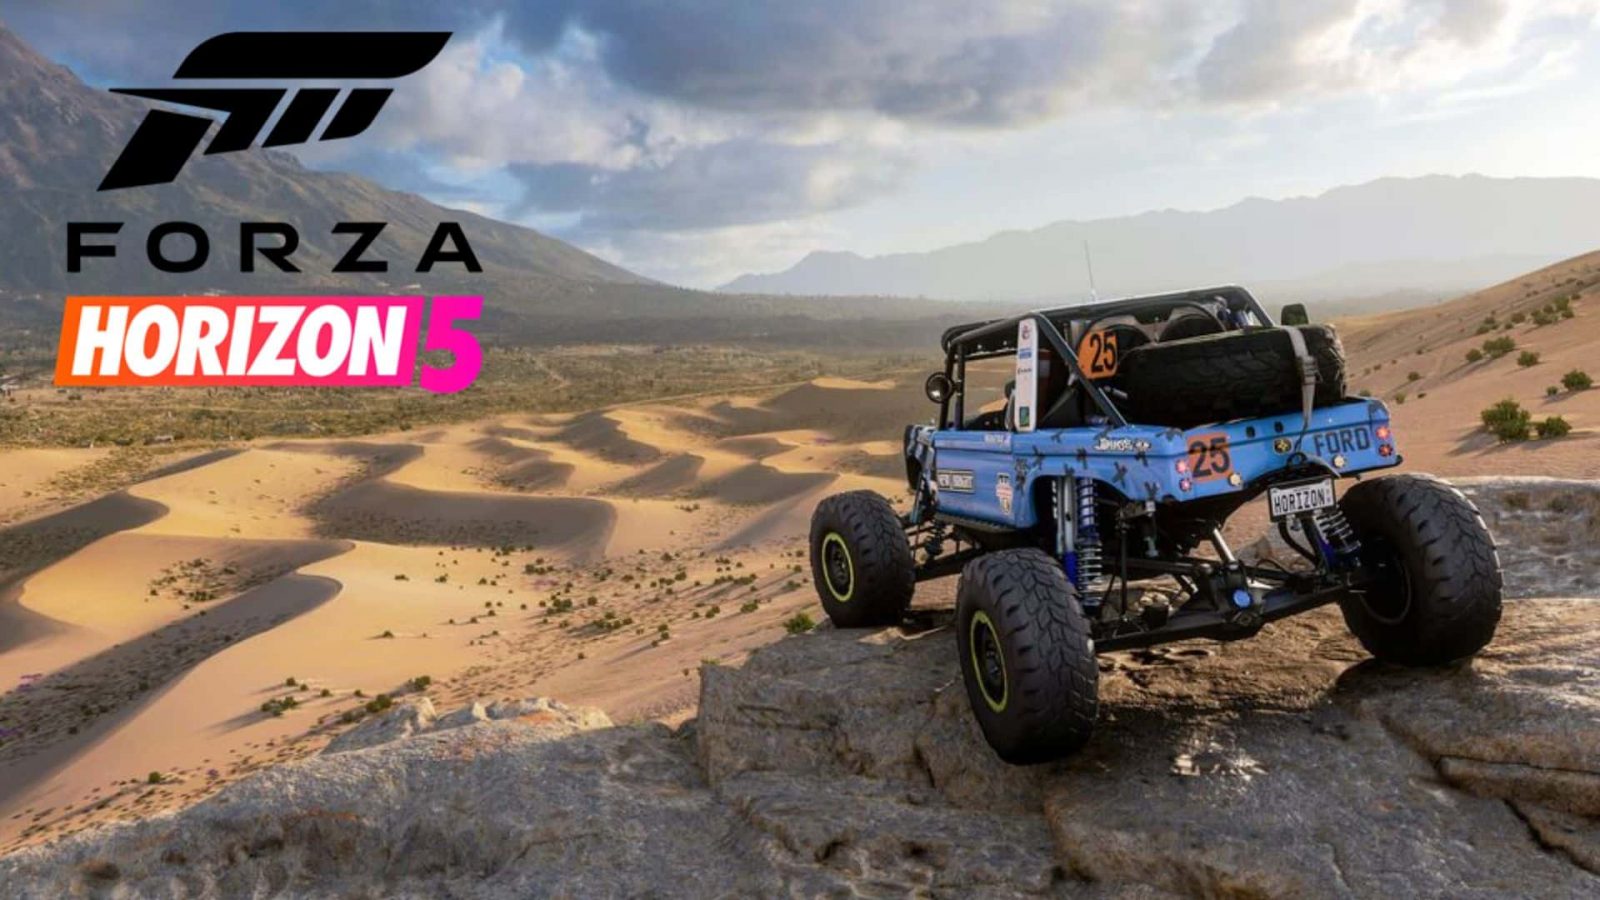 Forza Horizon 5 set to add Hot Wheels DLC next month - Dexerto